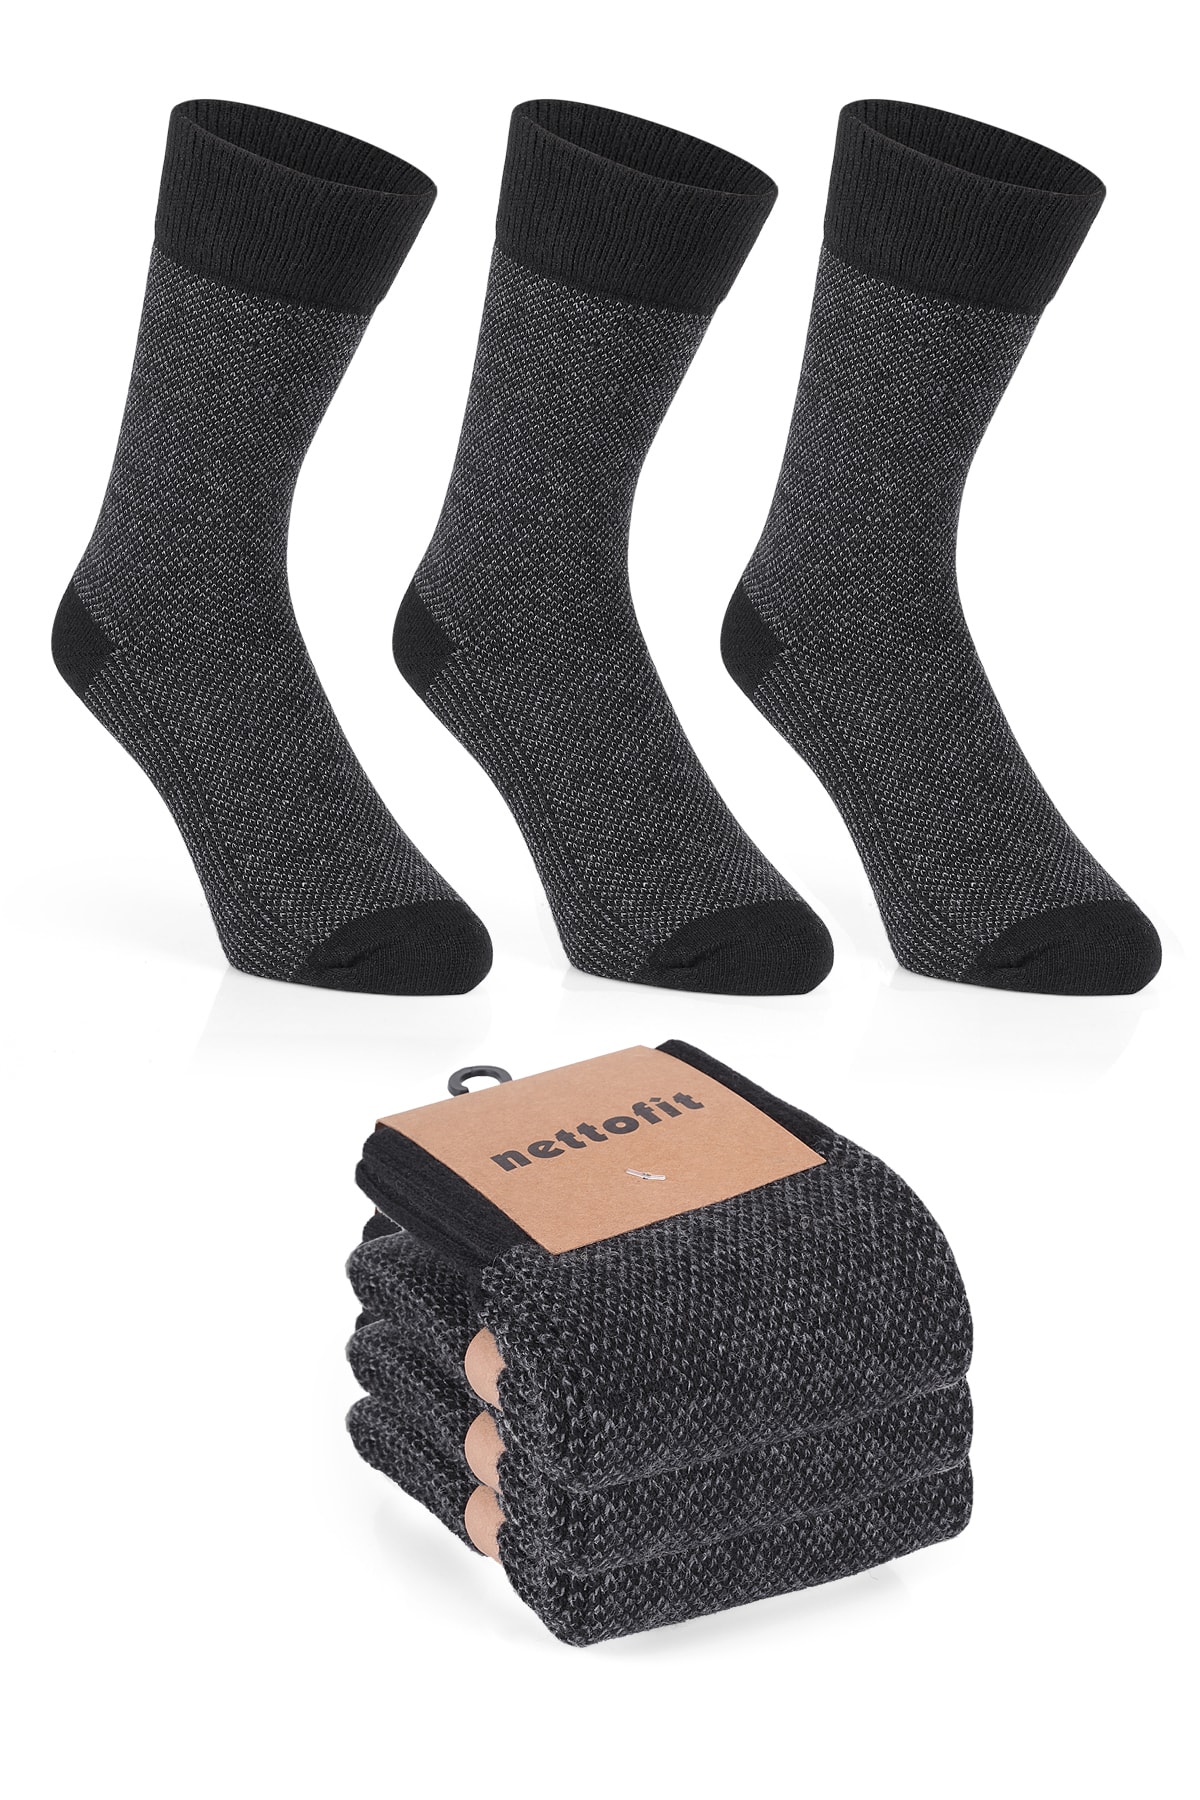 nettofit 3'lü Erkek Termal Kışlık Yün 'lü Dikişsiz Lambswool Soket Çorap